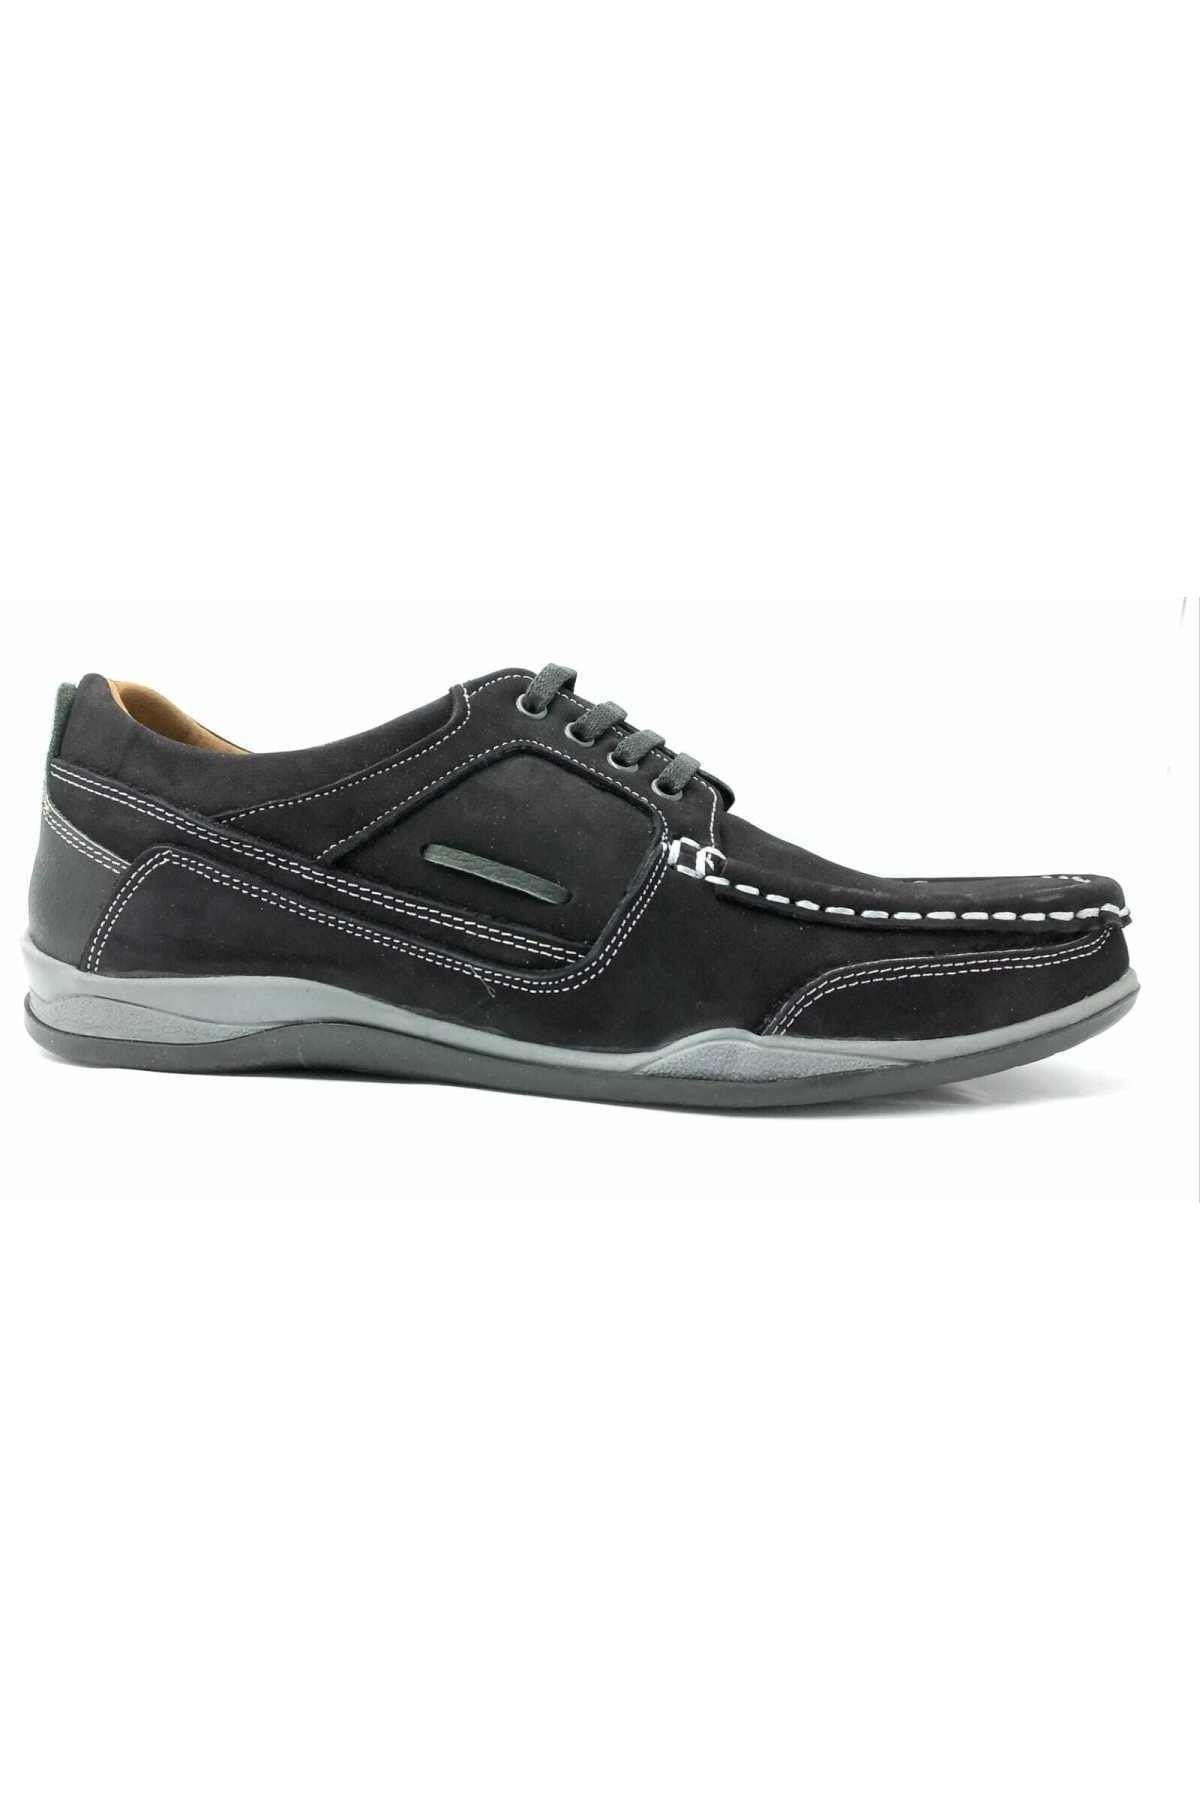 CHOPPER -cpr 22960 Siyah Erkek Deri Bağcıklı Casual Ayakkabı